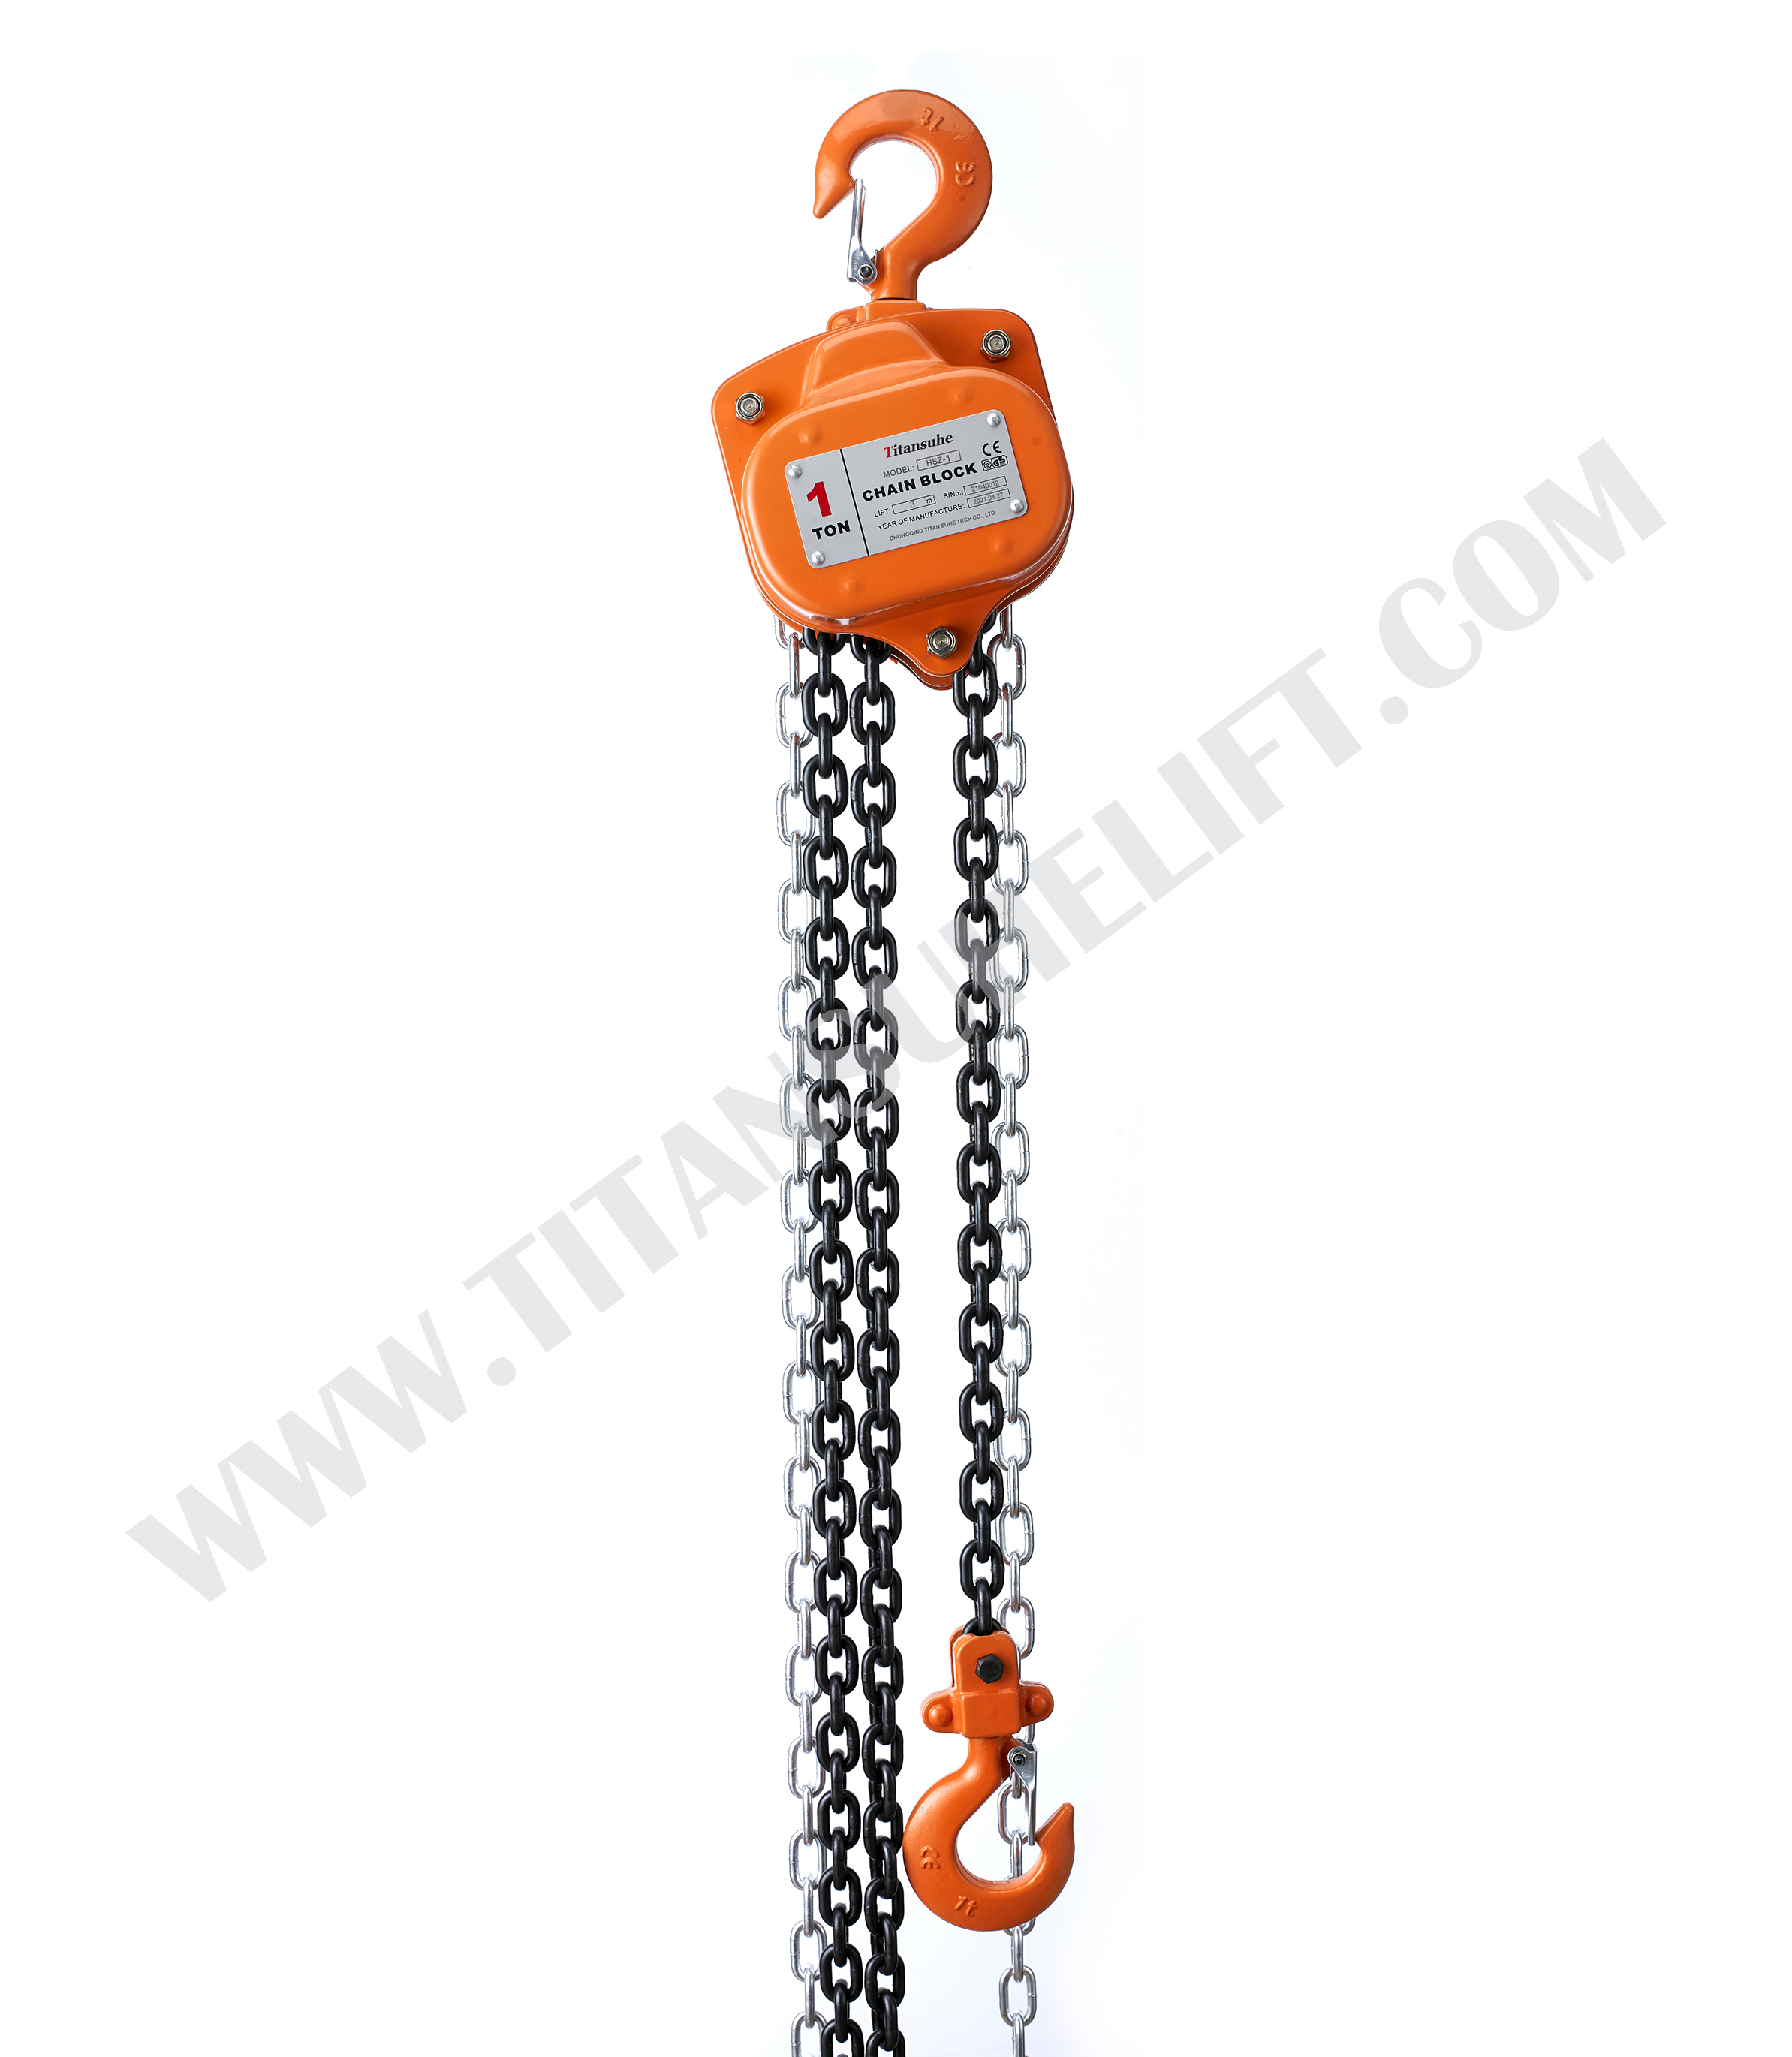 HSZ-A622 1 Ton Chain Hoist